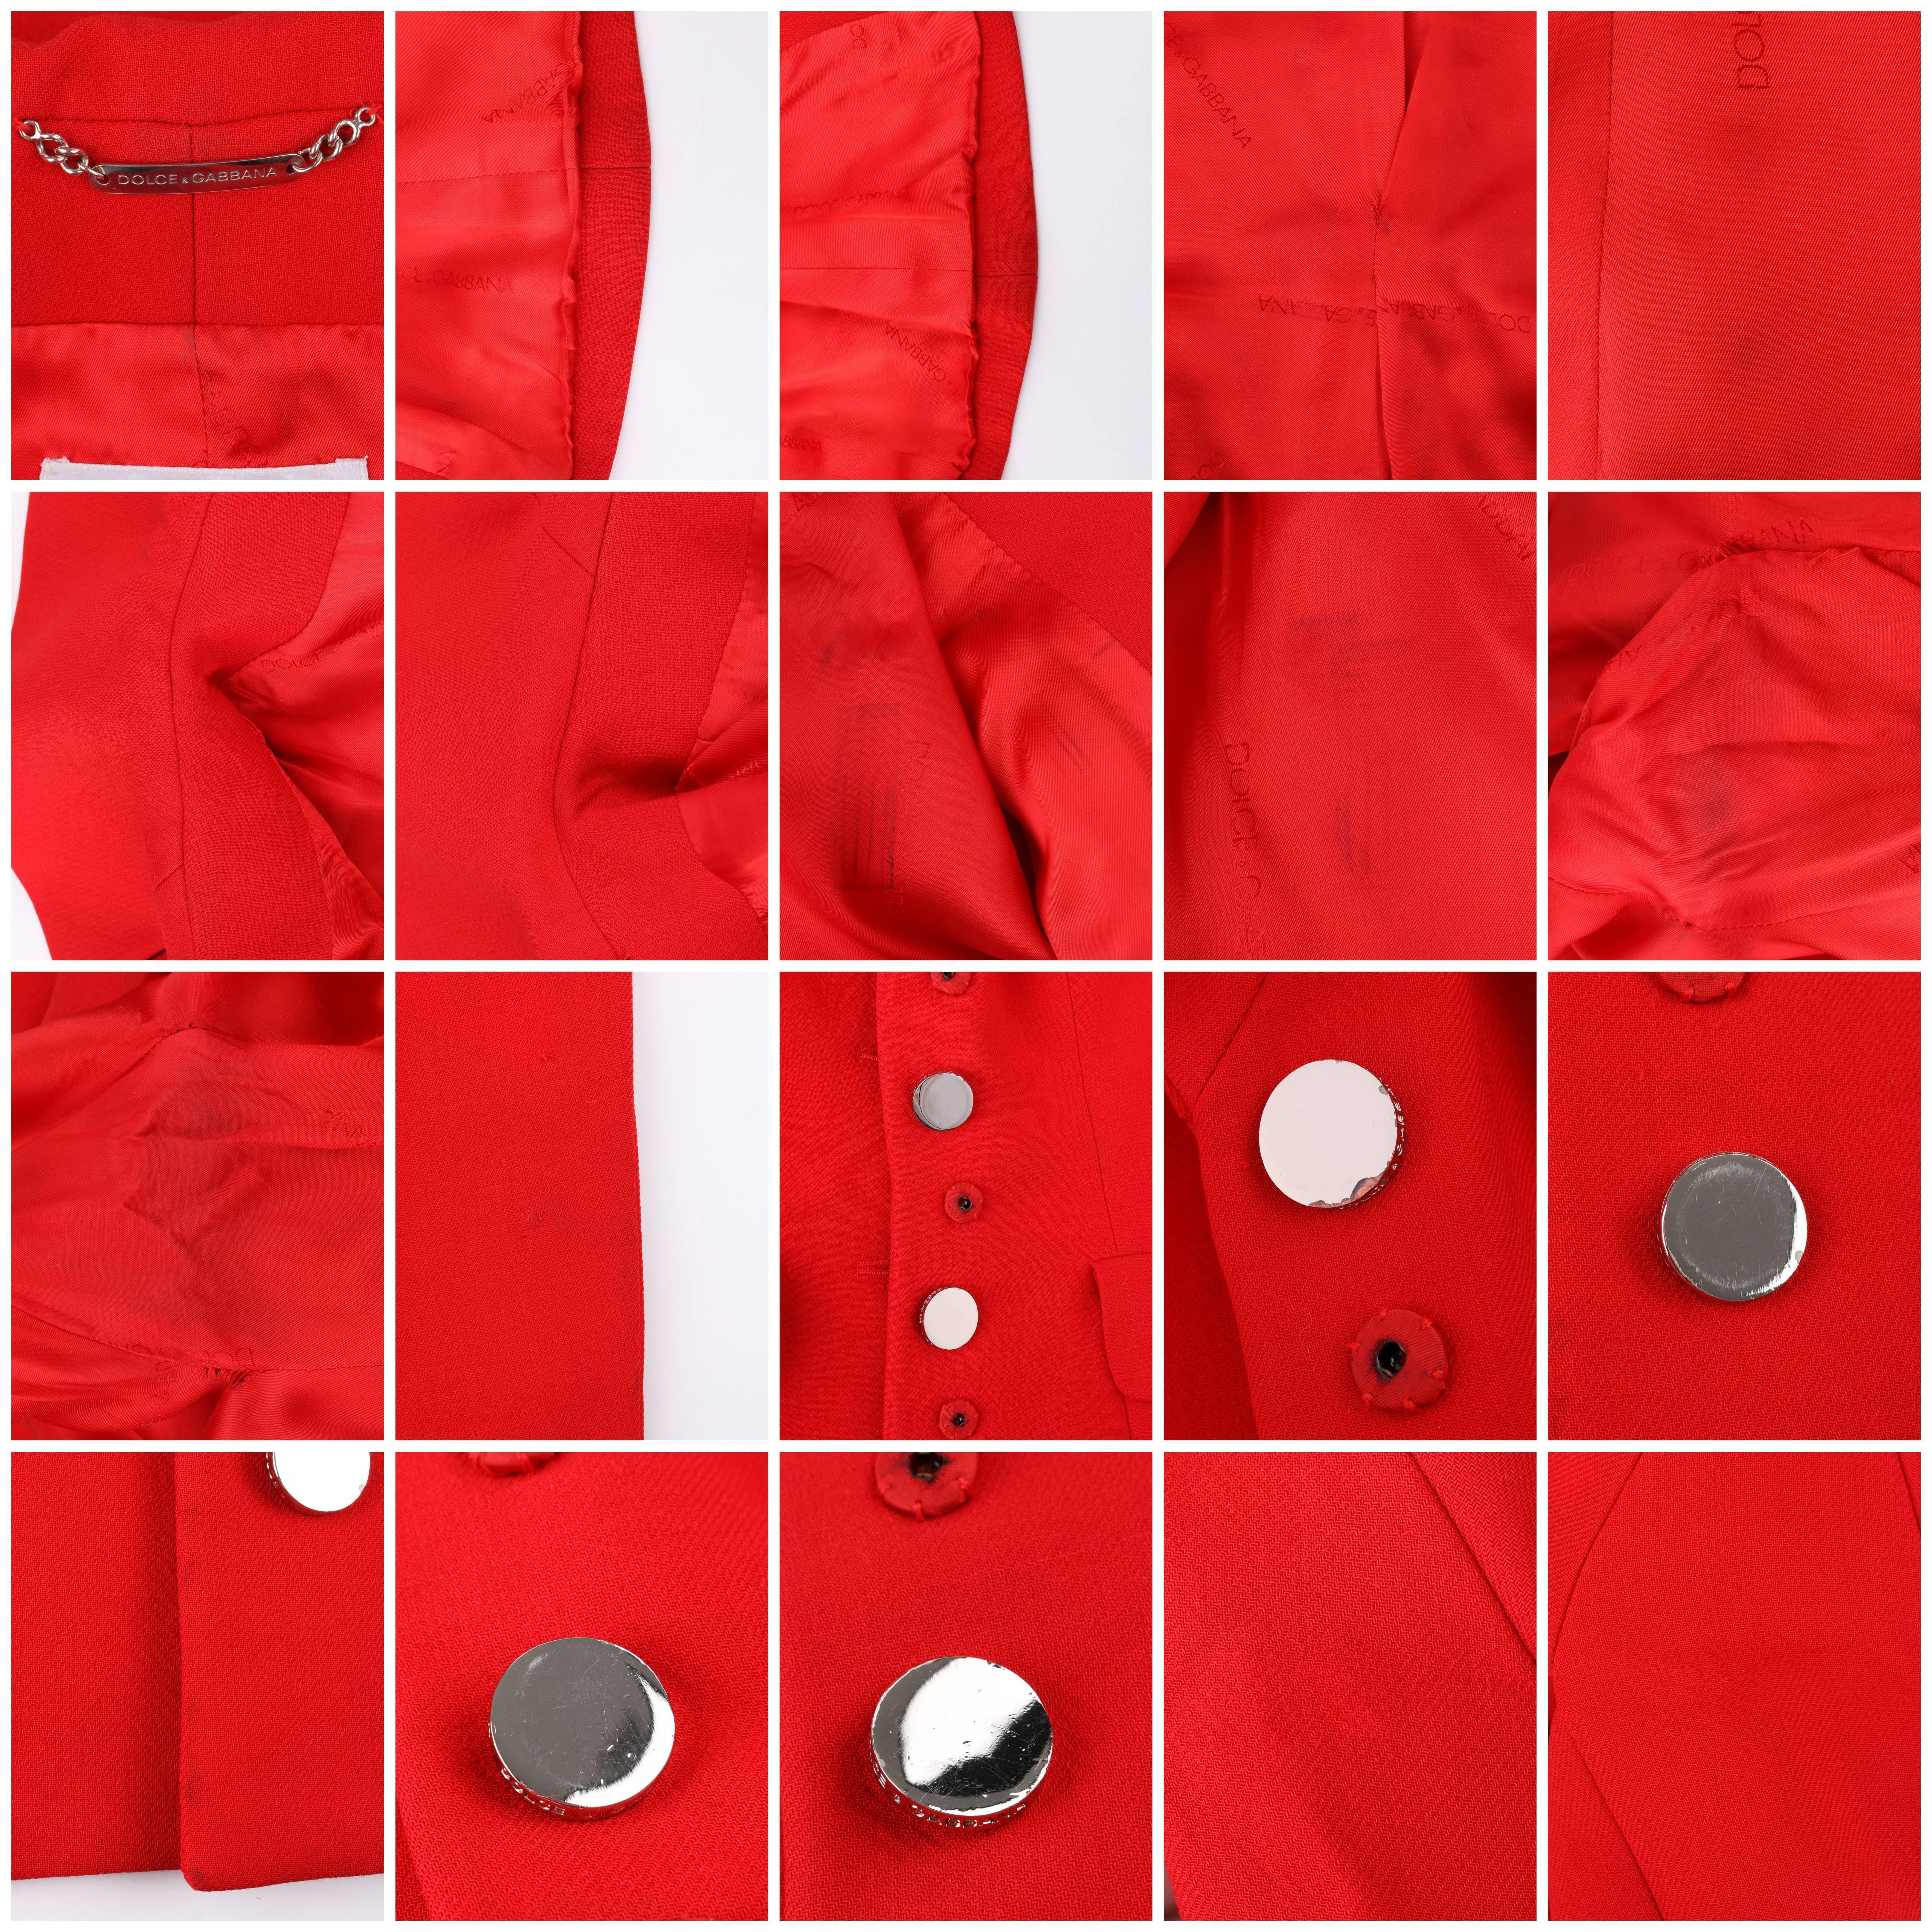 DOLCE & GABBANA A/W 1995 2 Piece Red 100% Wool Blazer Mini Skirt Suit Set 2